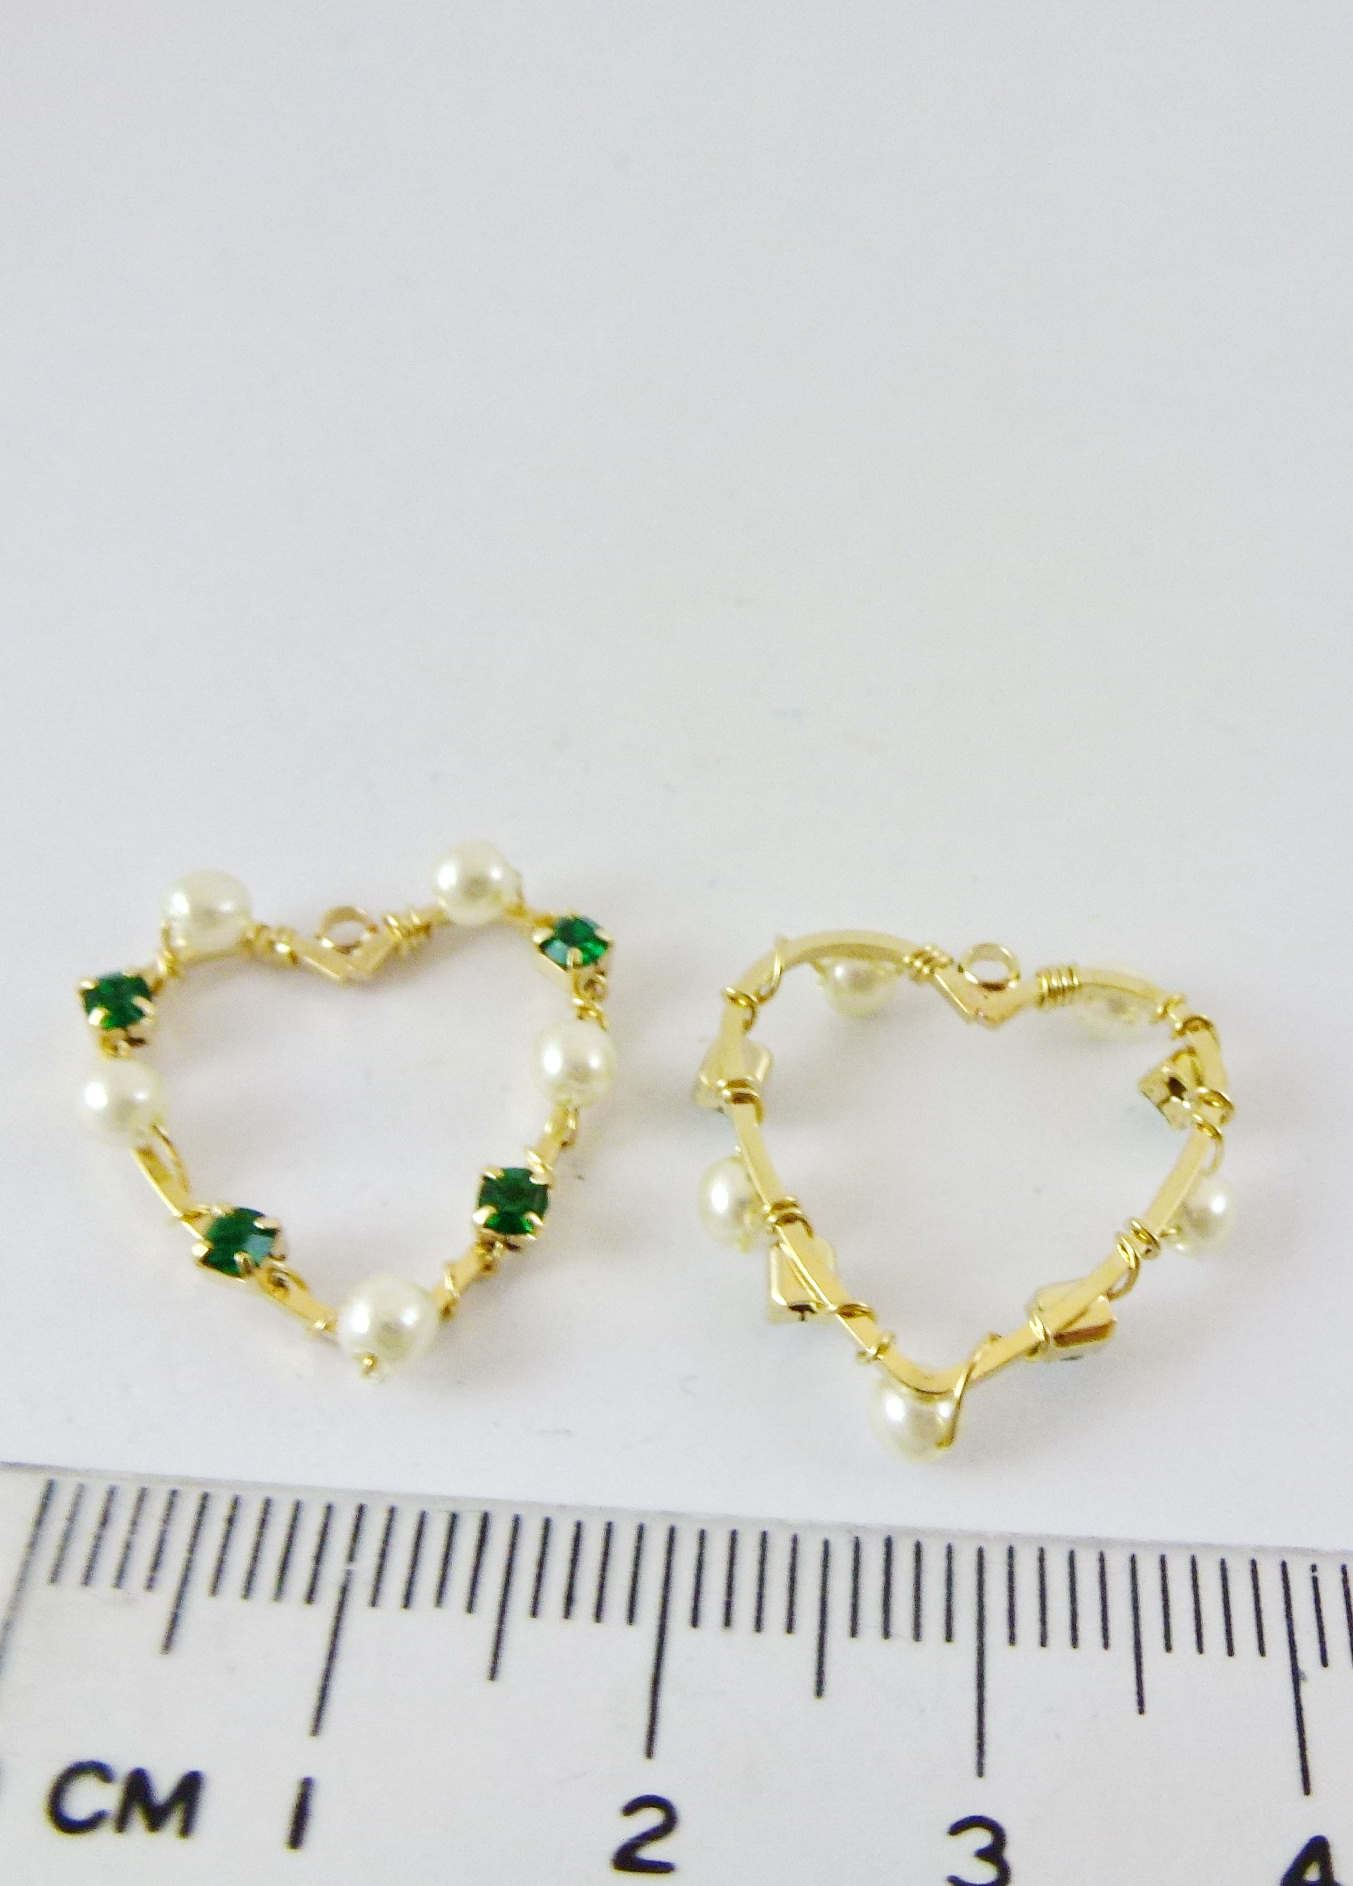 銅鍍金色單孔鑲鑽珍珠心-綠色